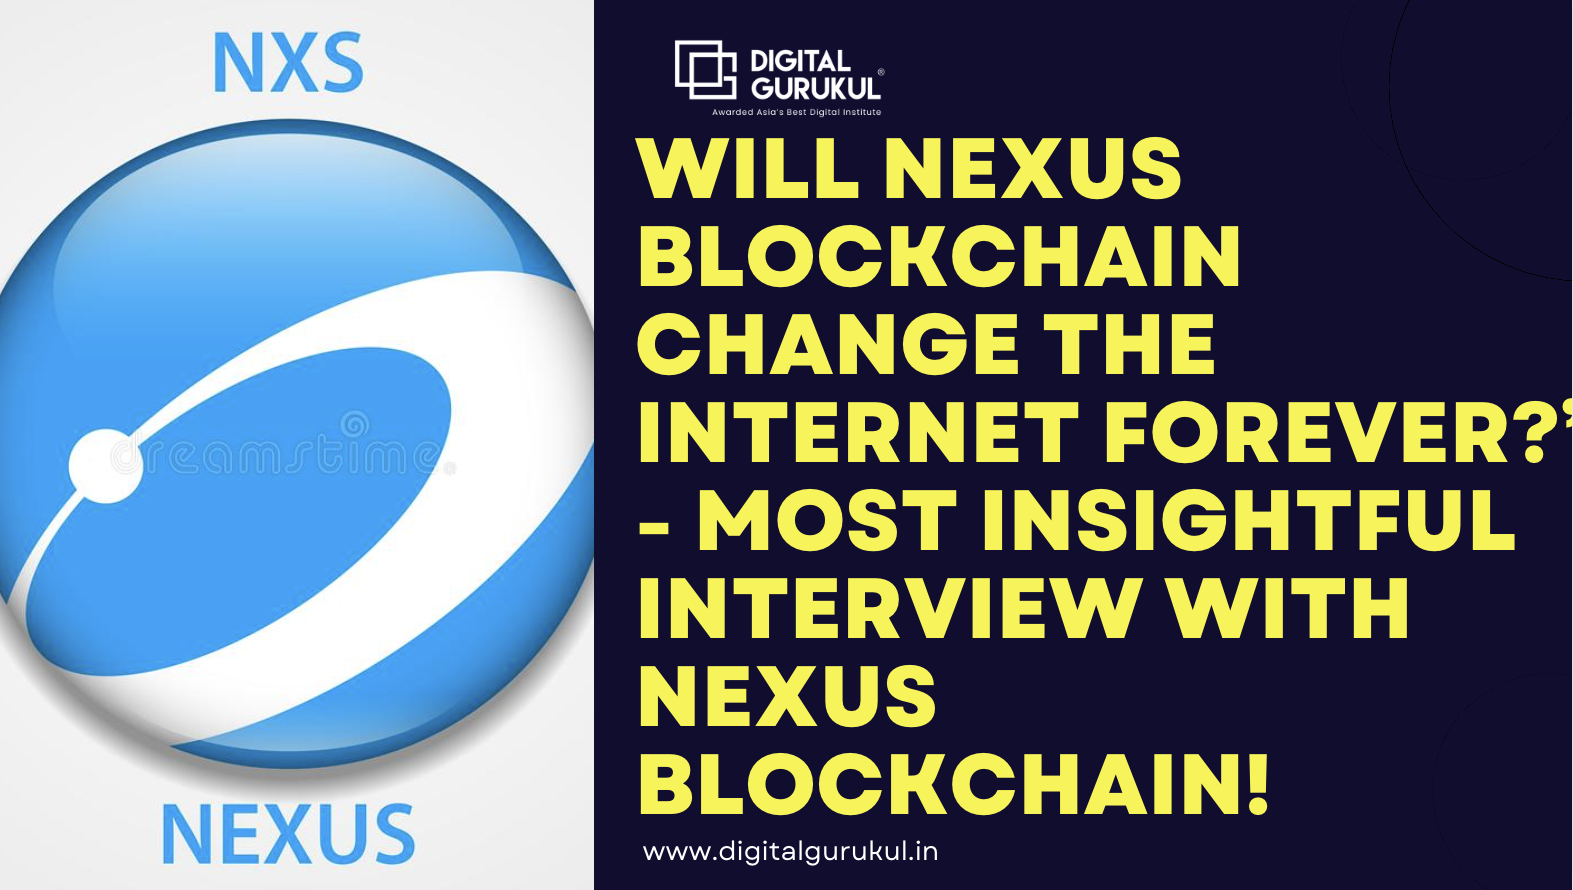 Will Nexus blockchain change the internet forever?” - Most Insightful interview with Nexus Blockchain!